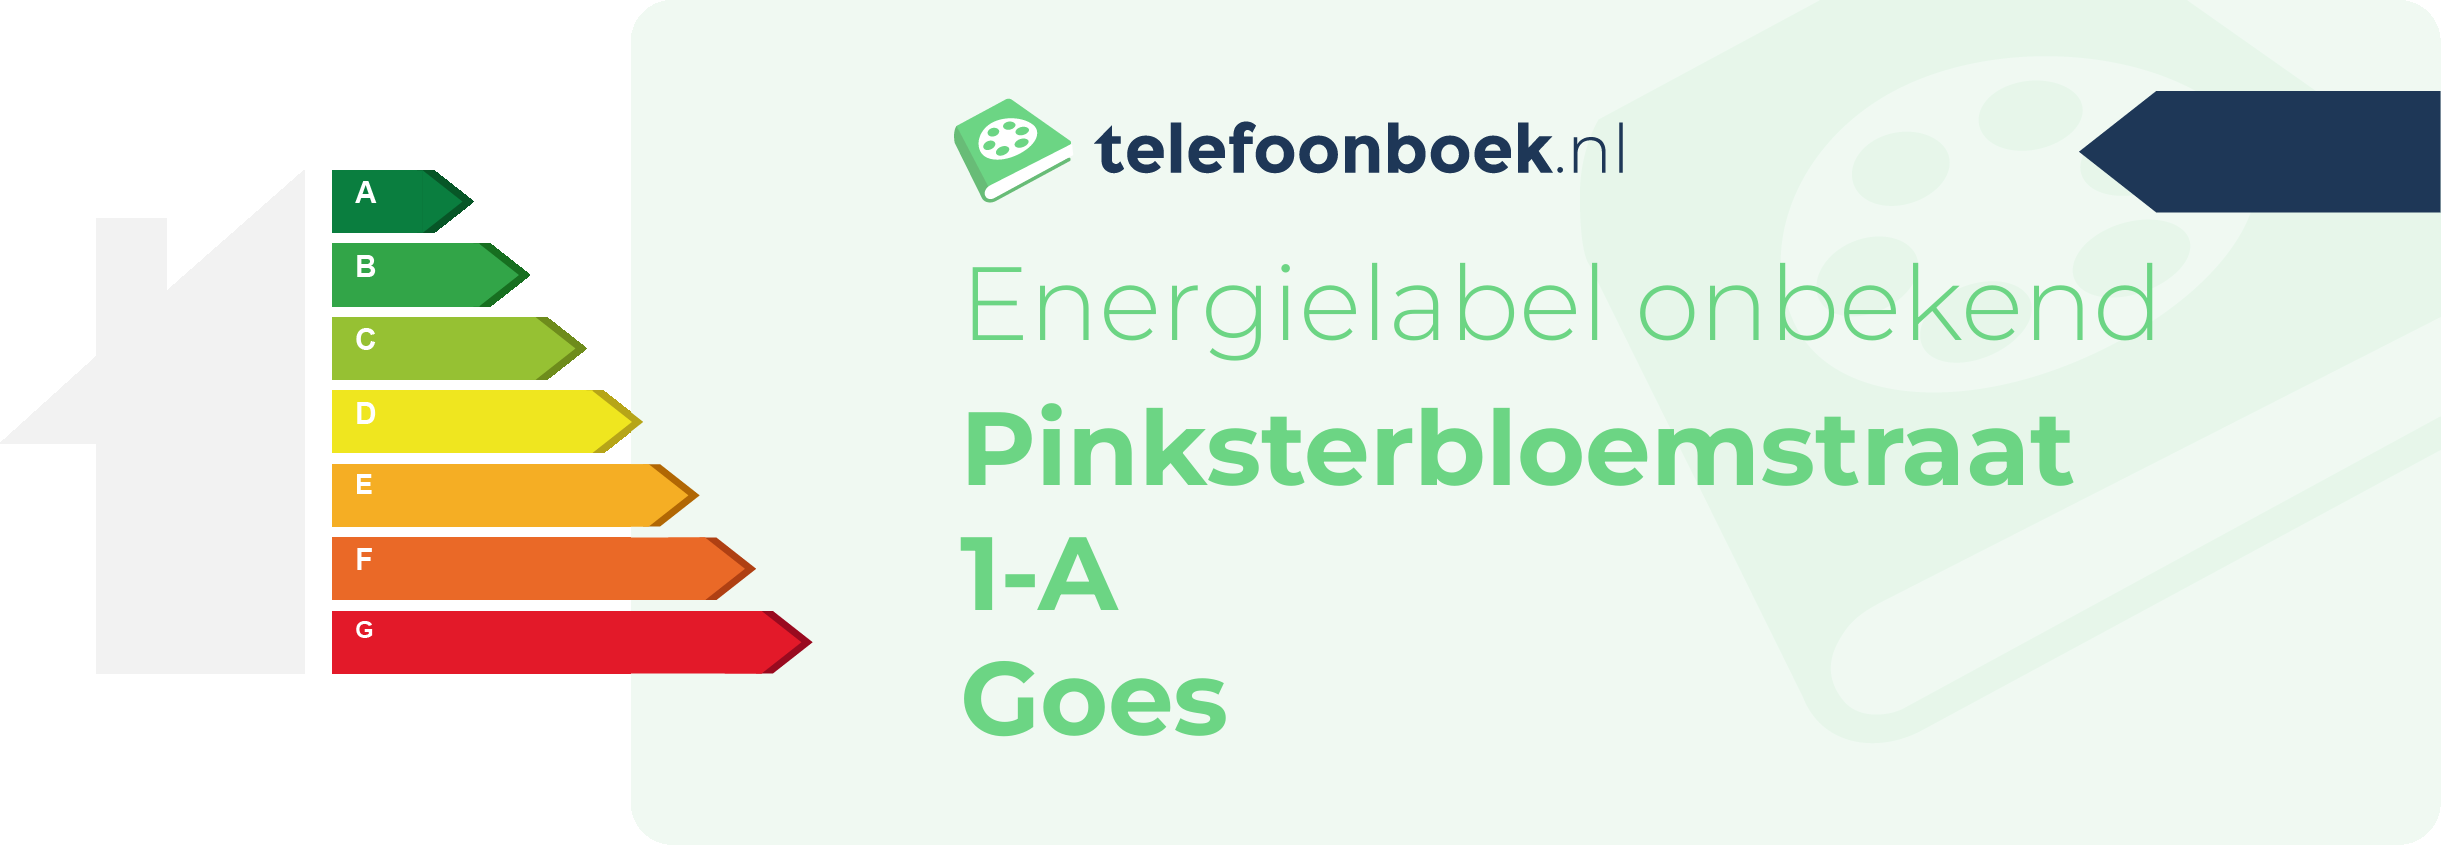 Energielabel Pinksterbloemstraat 1-A Goes